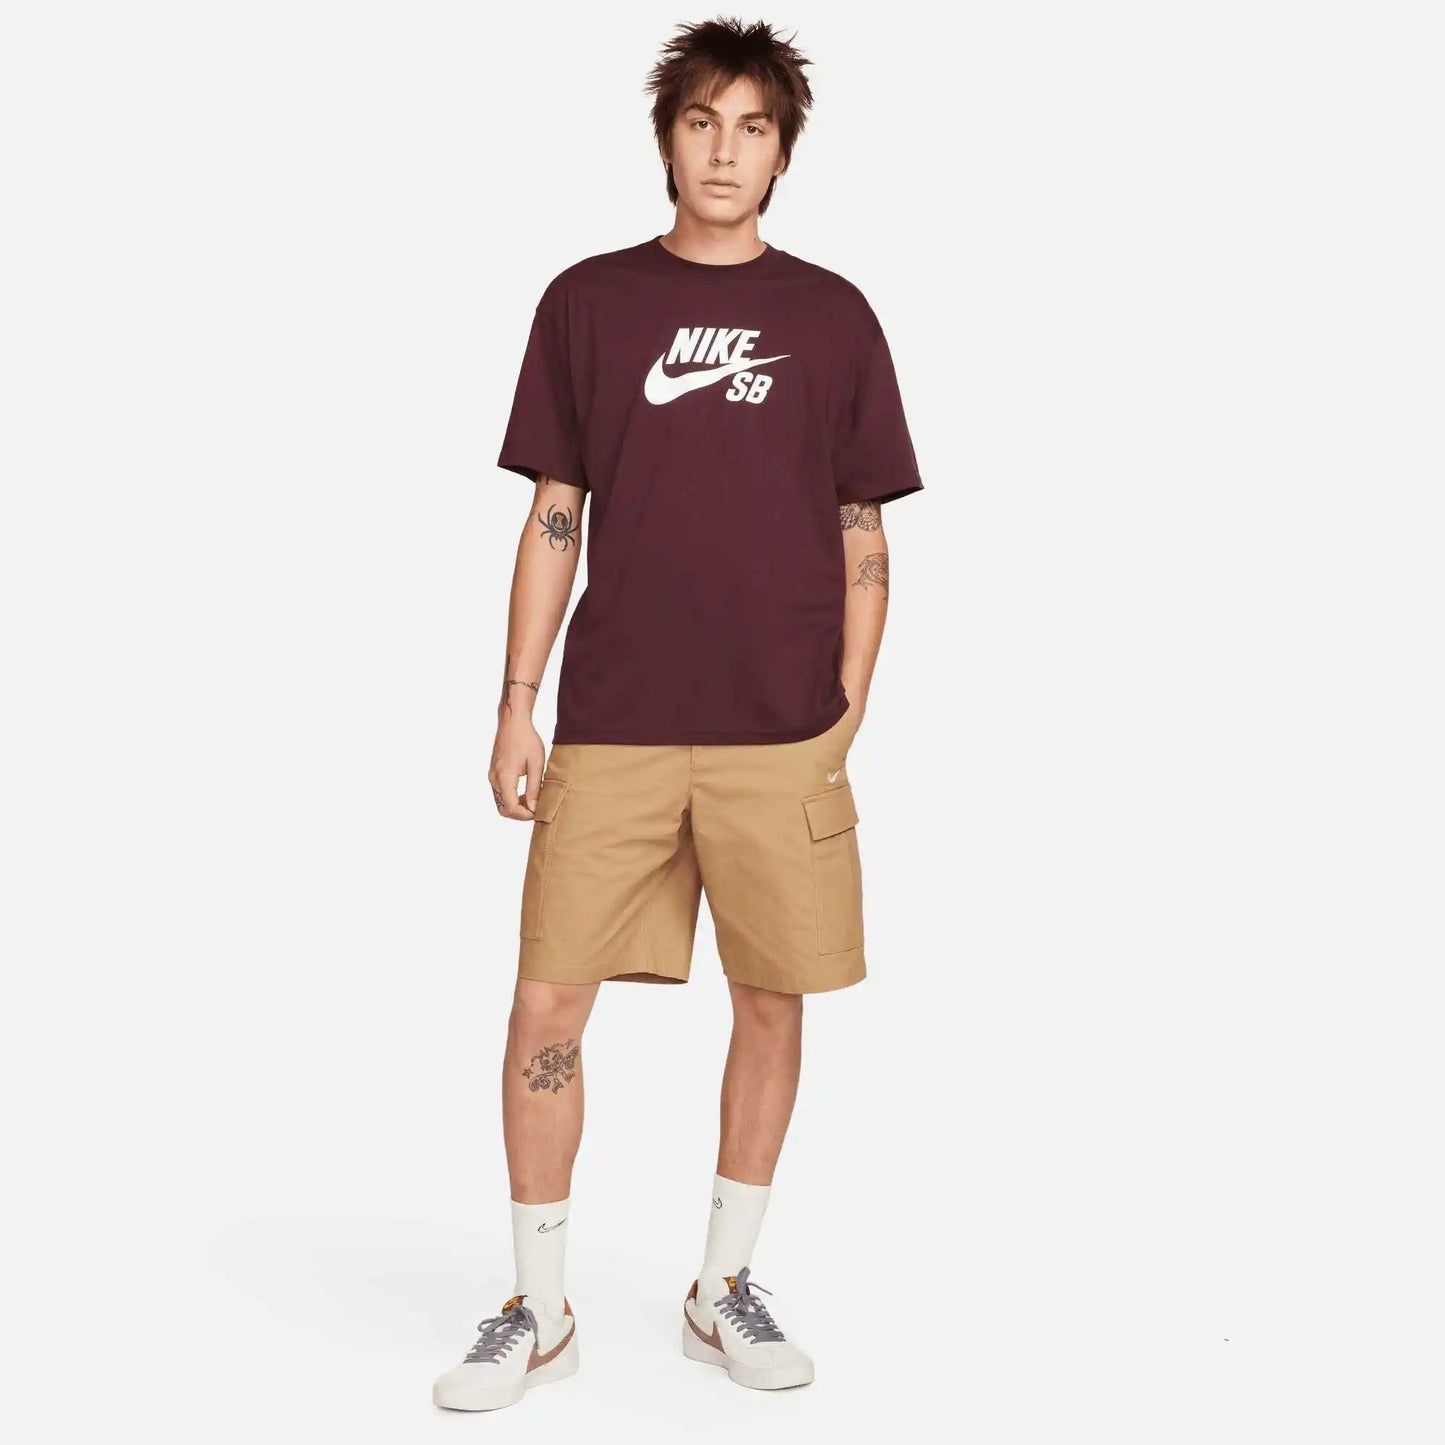 Nike SB Logo Skate T-Shirt, burgundy crush/white - Tiki Room Skateboards - 3